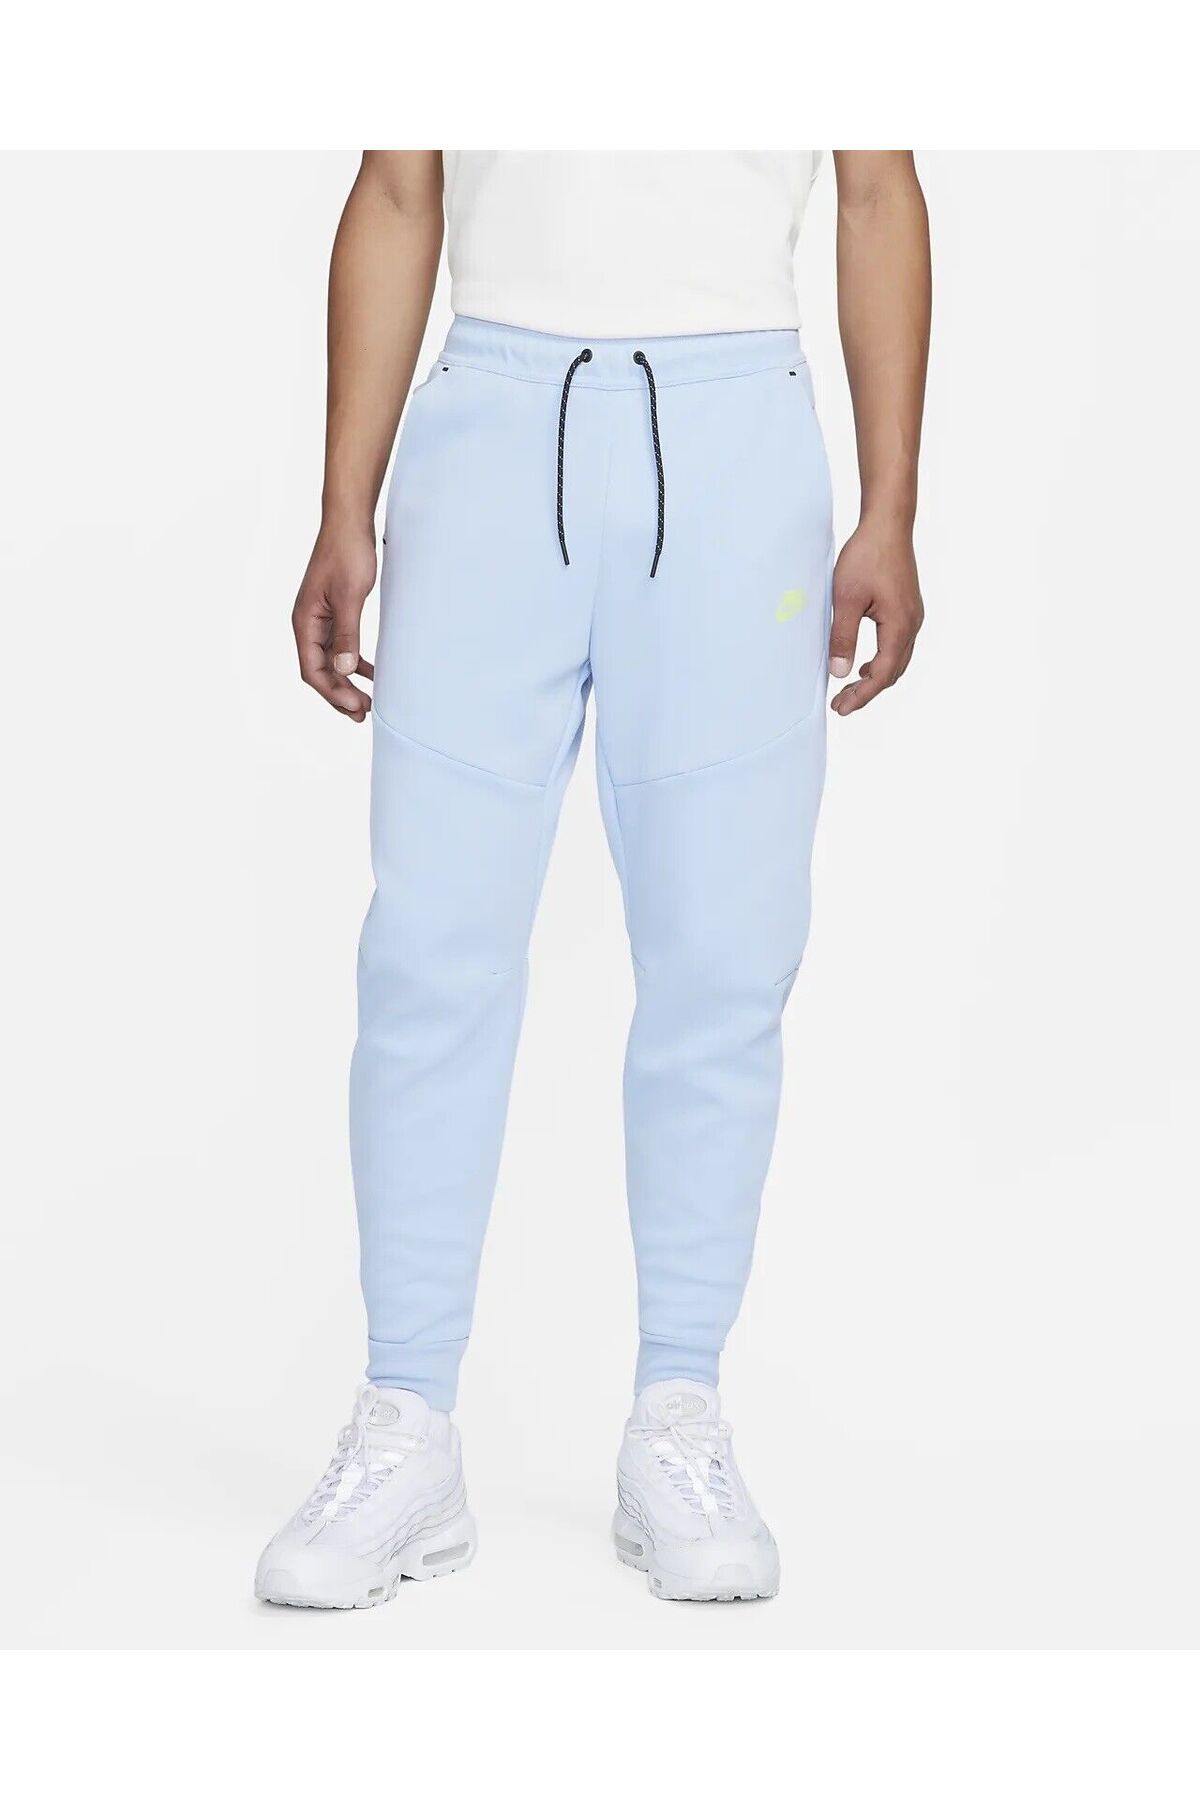 Nike Sportswear Tech Fleece Jogger Light Blue